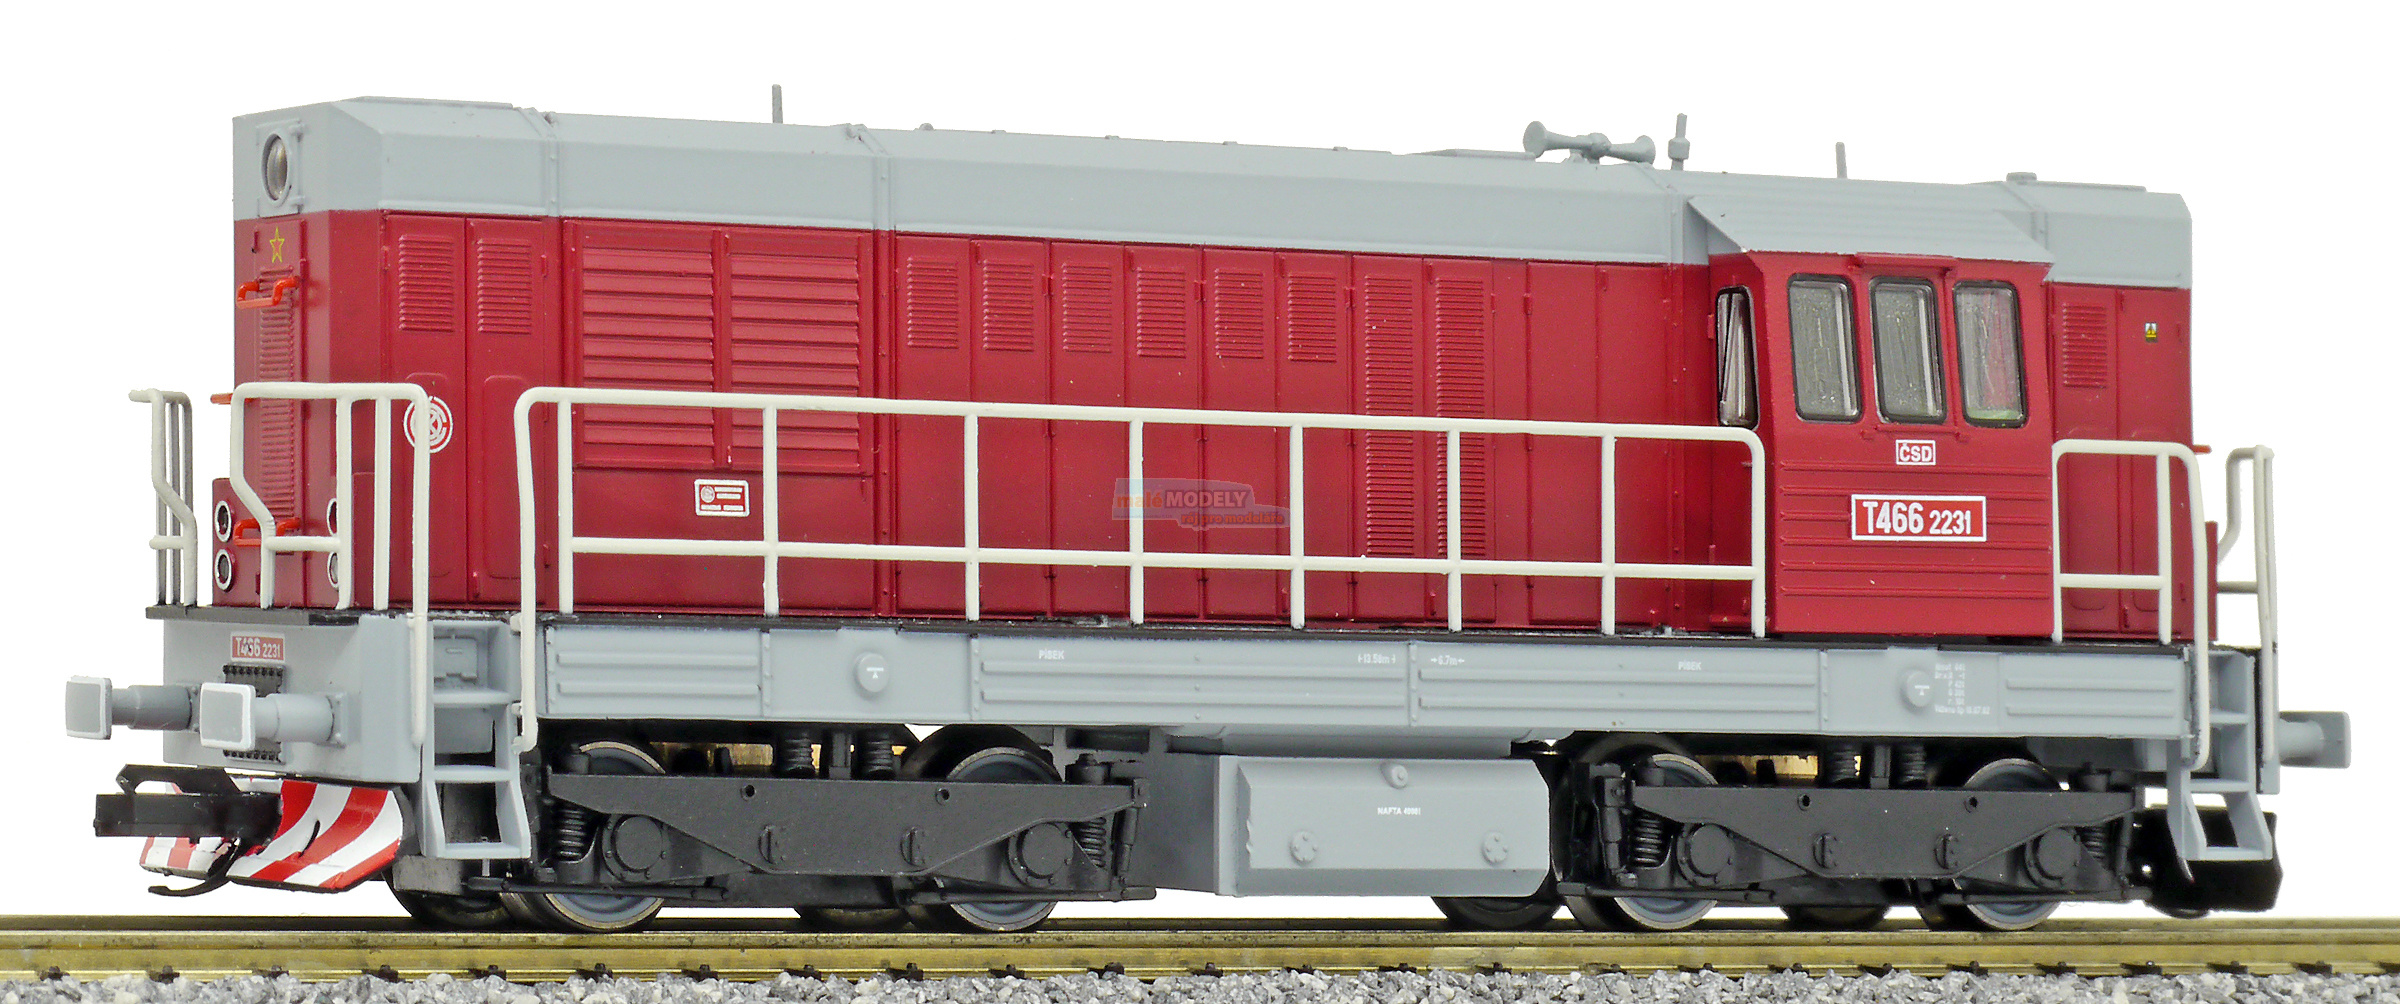 Dieselová lokomotiva řady T 466.2